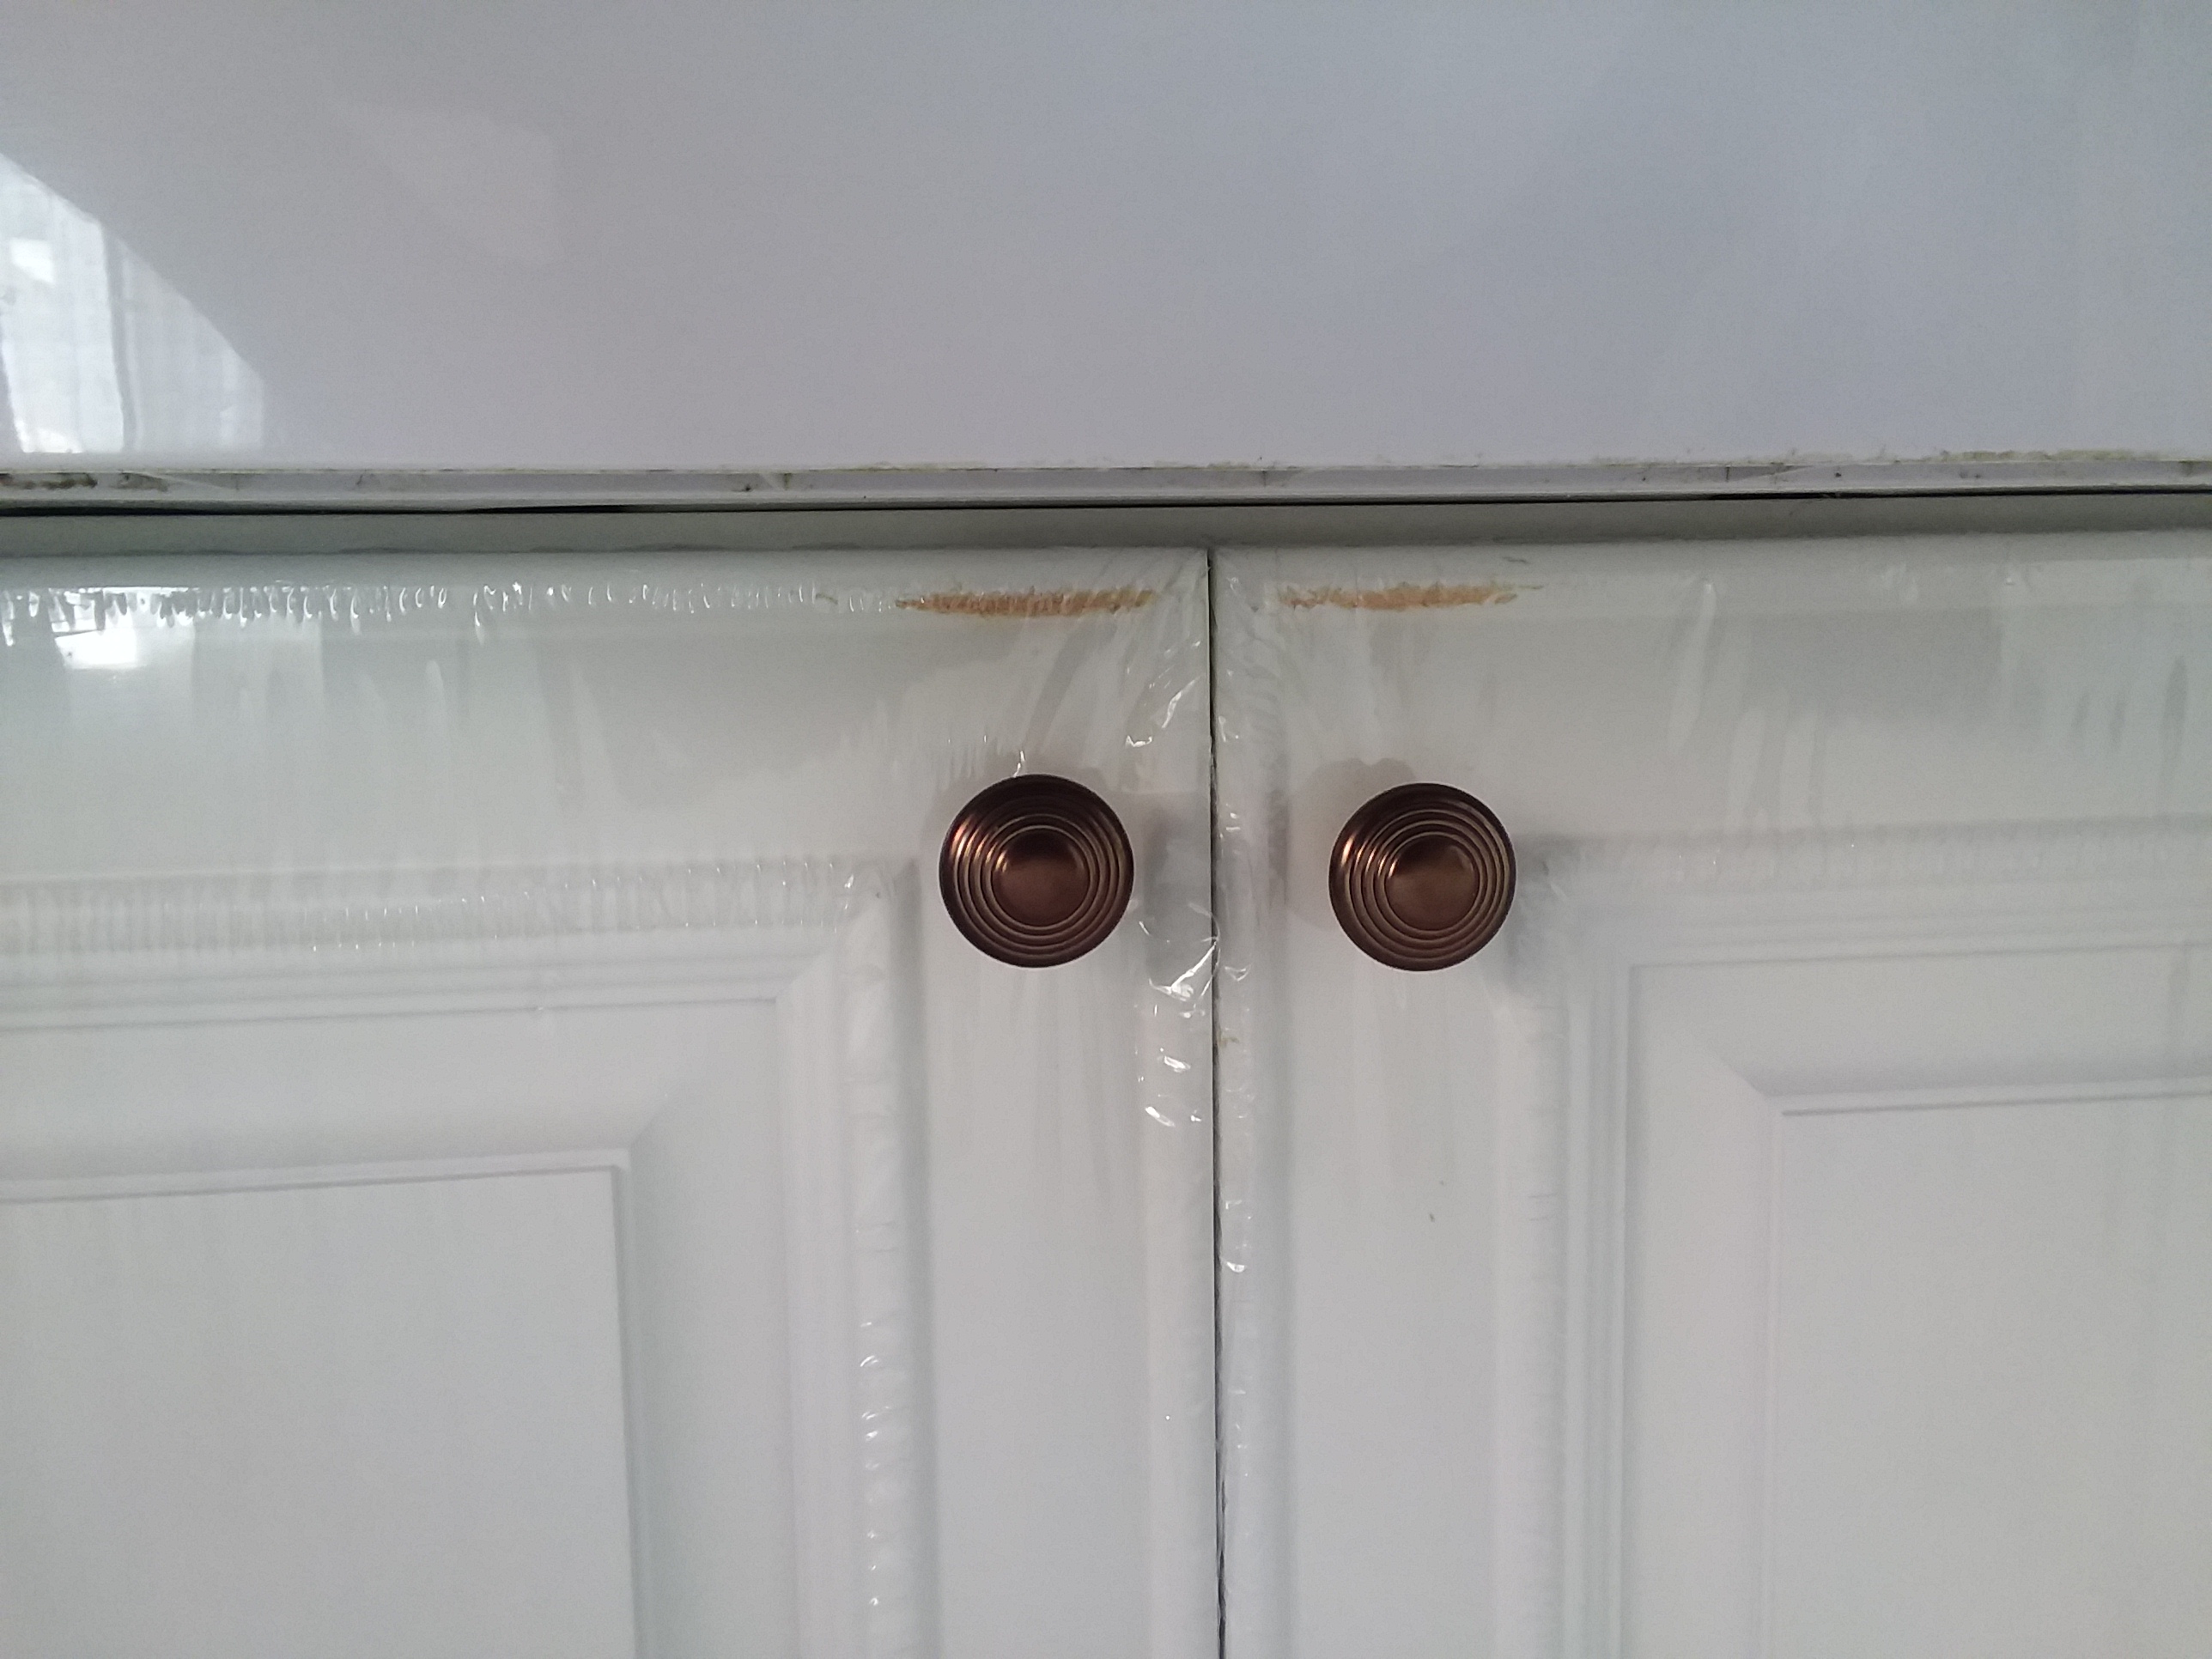 Door knobs not aligned